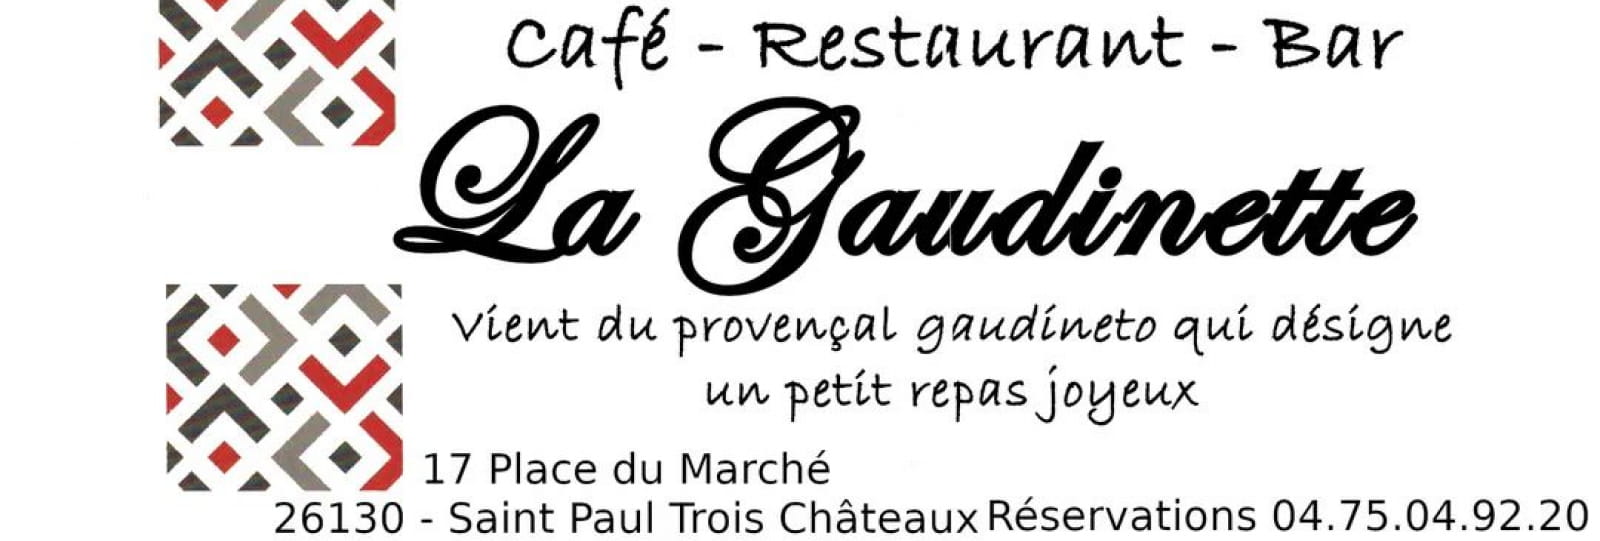 Restaurant La Gaudinette